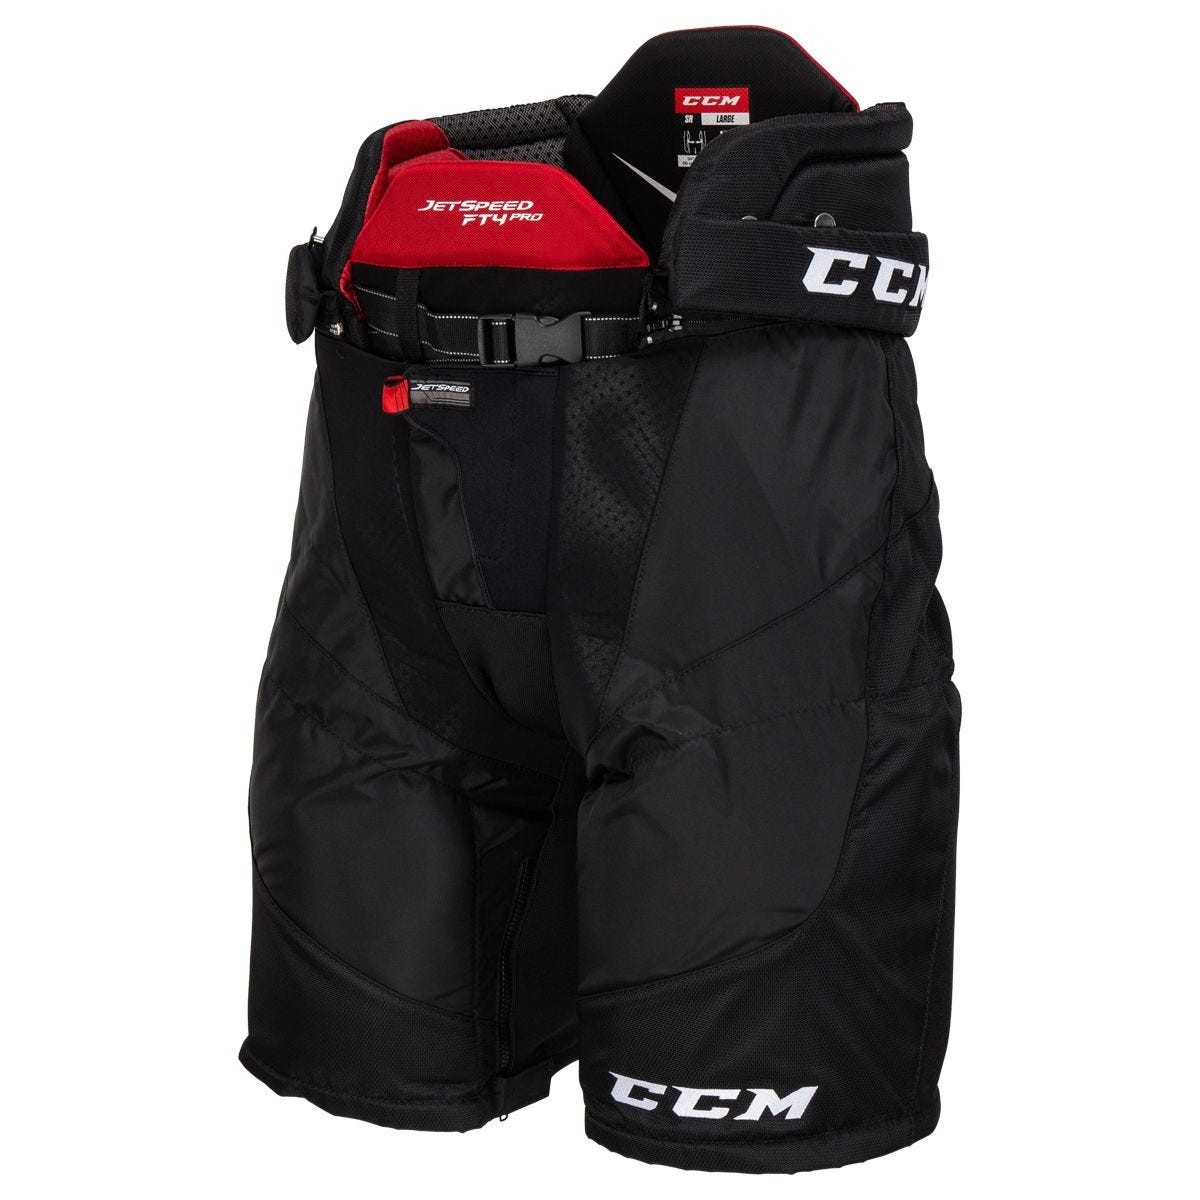 CCM Jetspeed FT4 Pro Senior Ice Hockey Pants